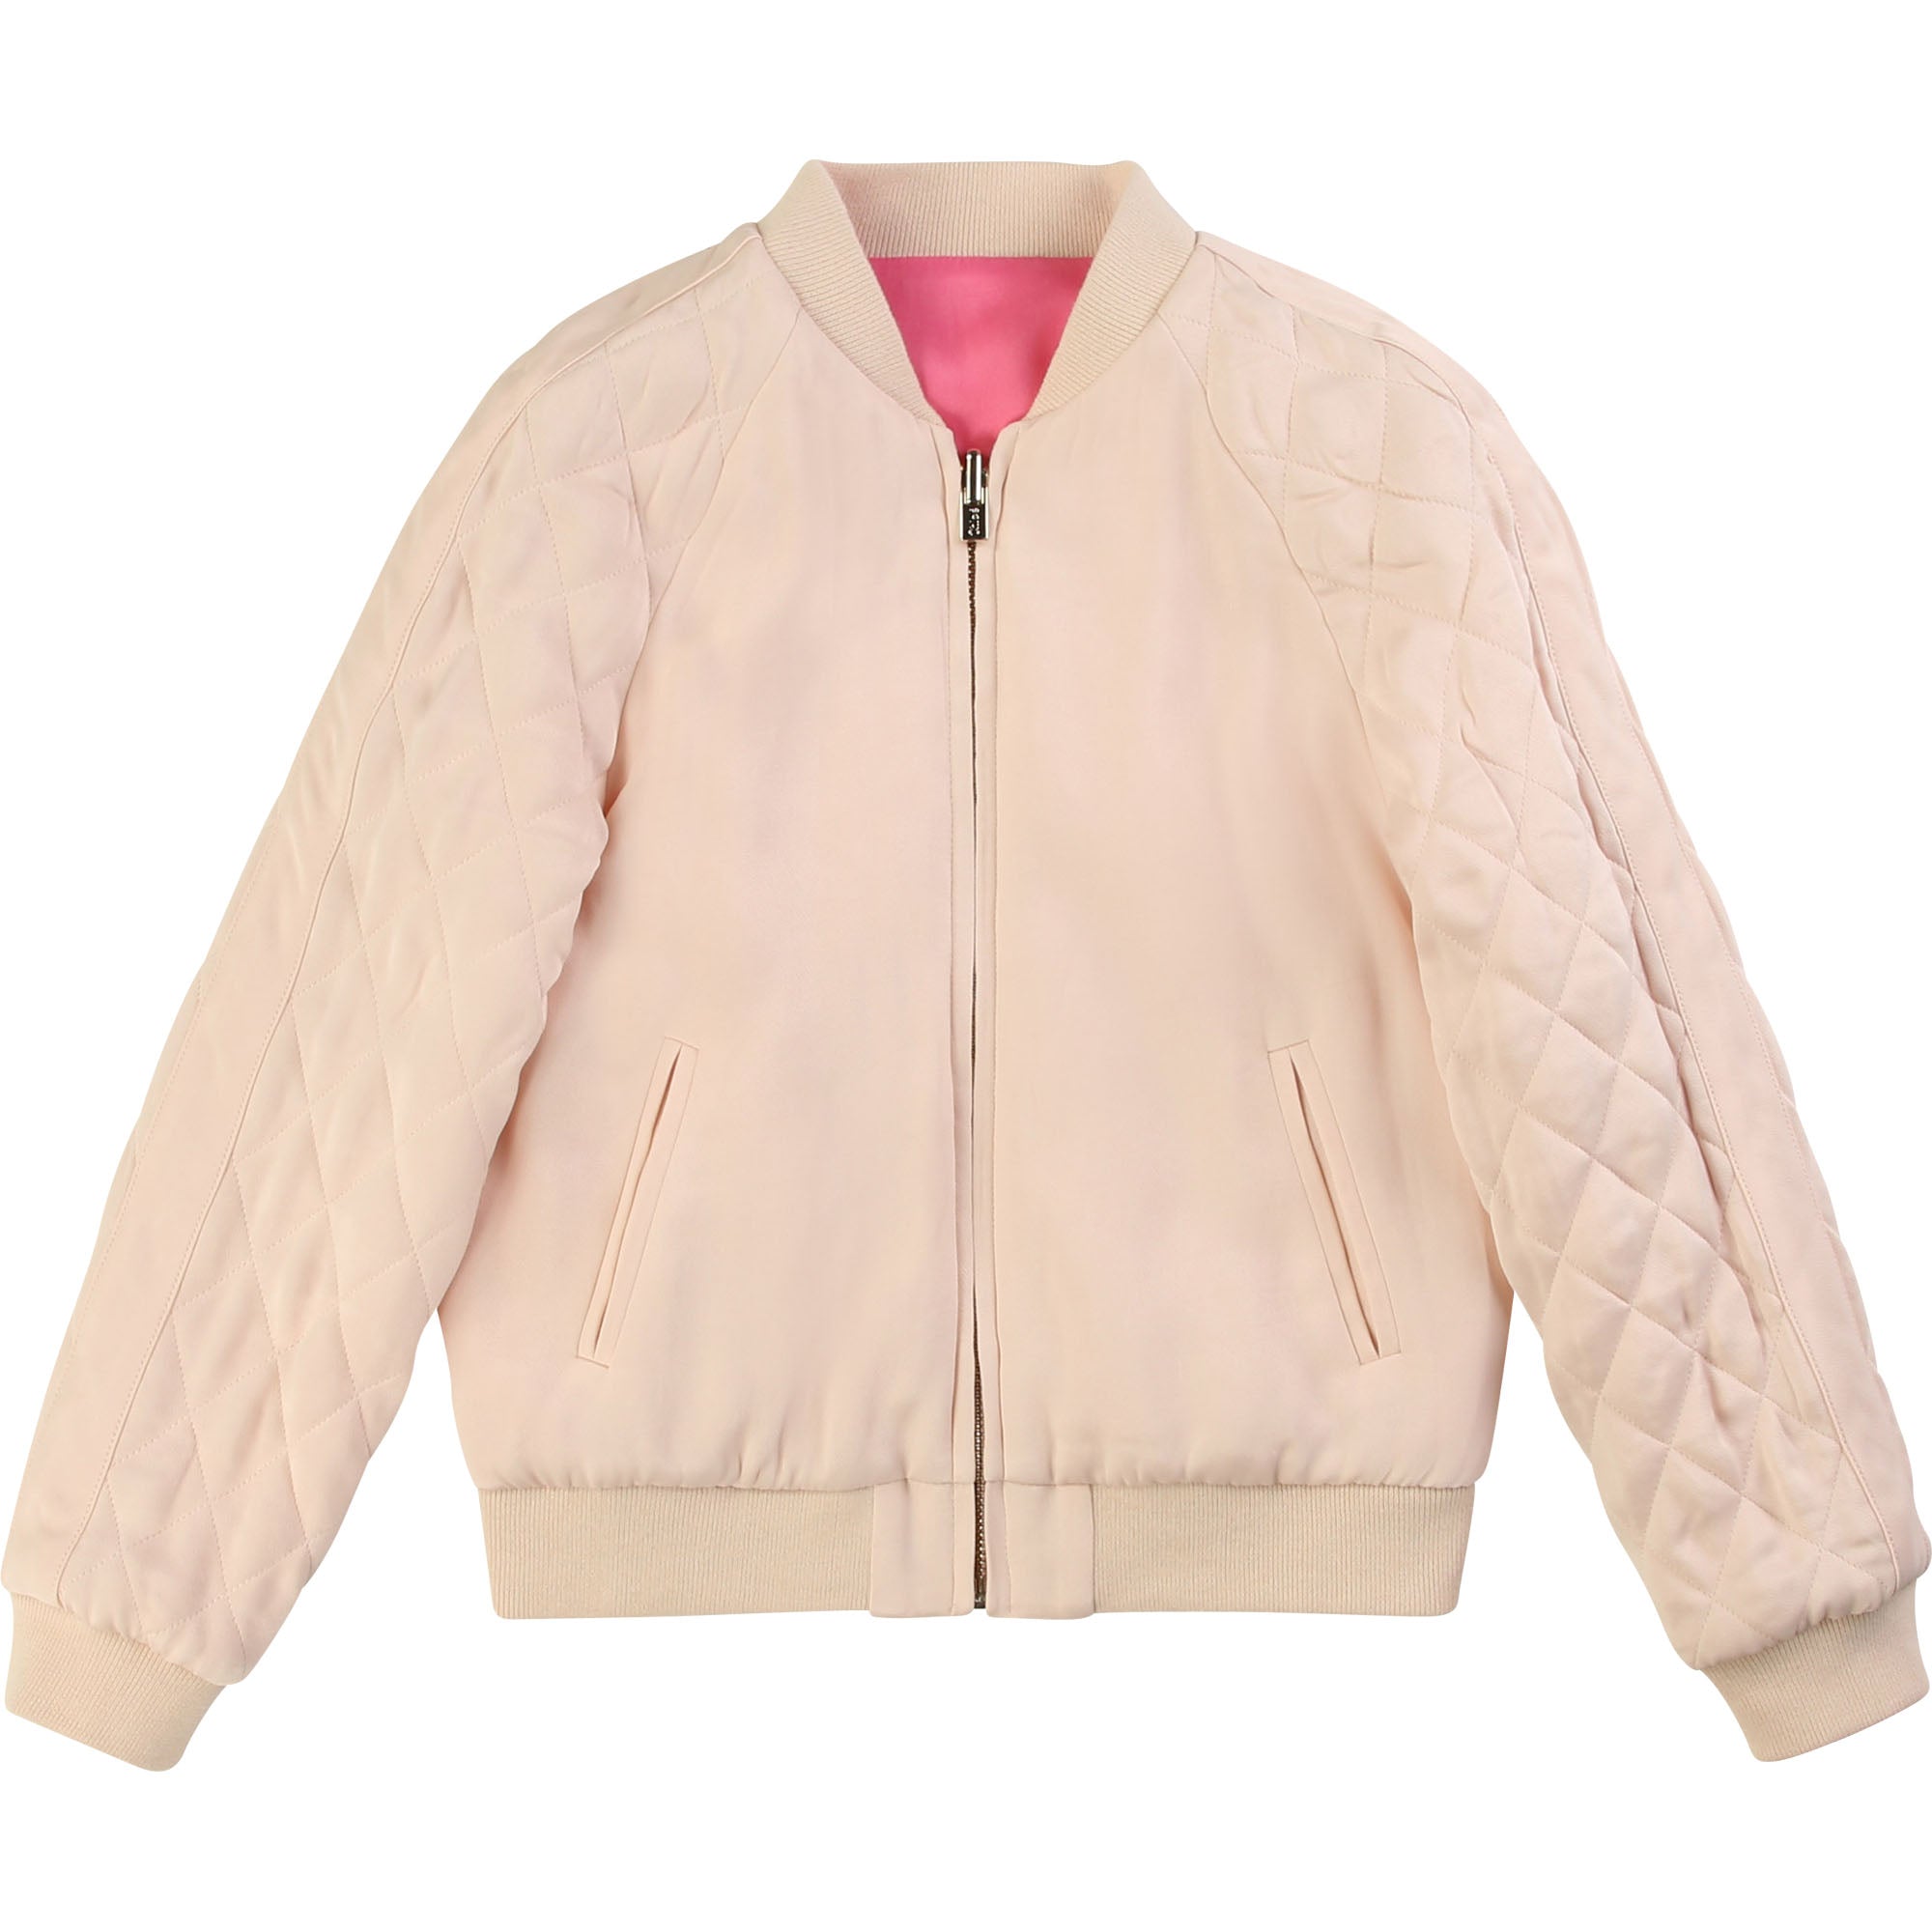 Girls Pink Reversible Jacket